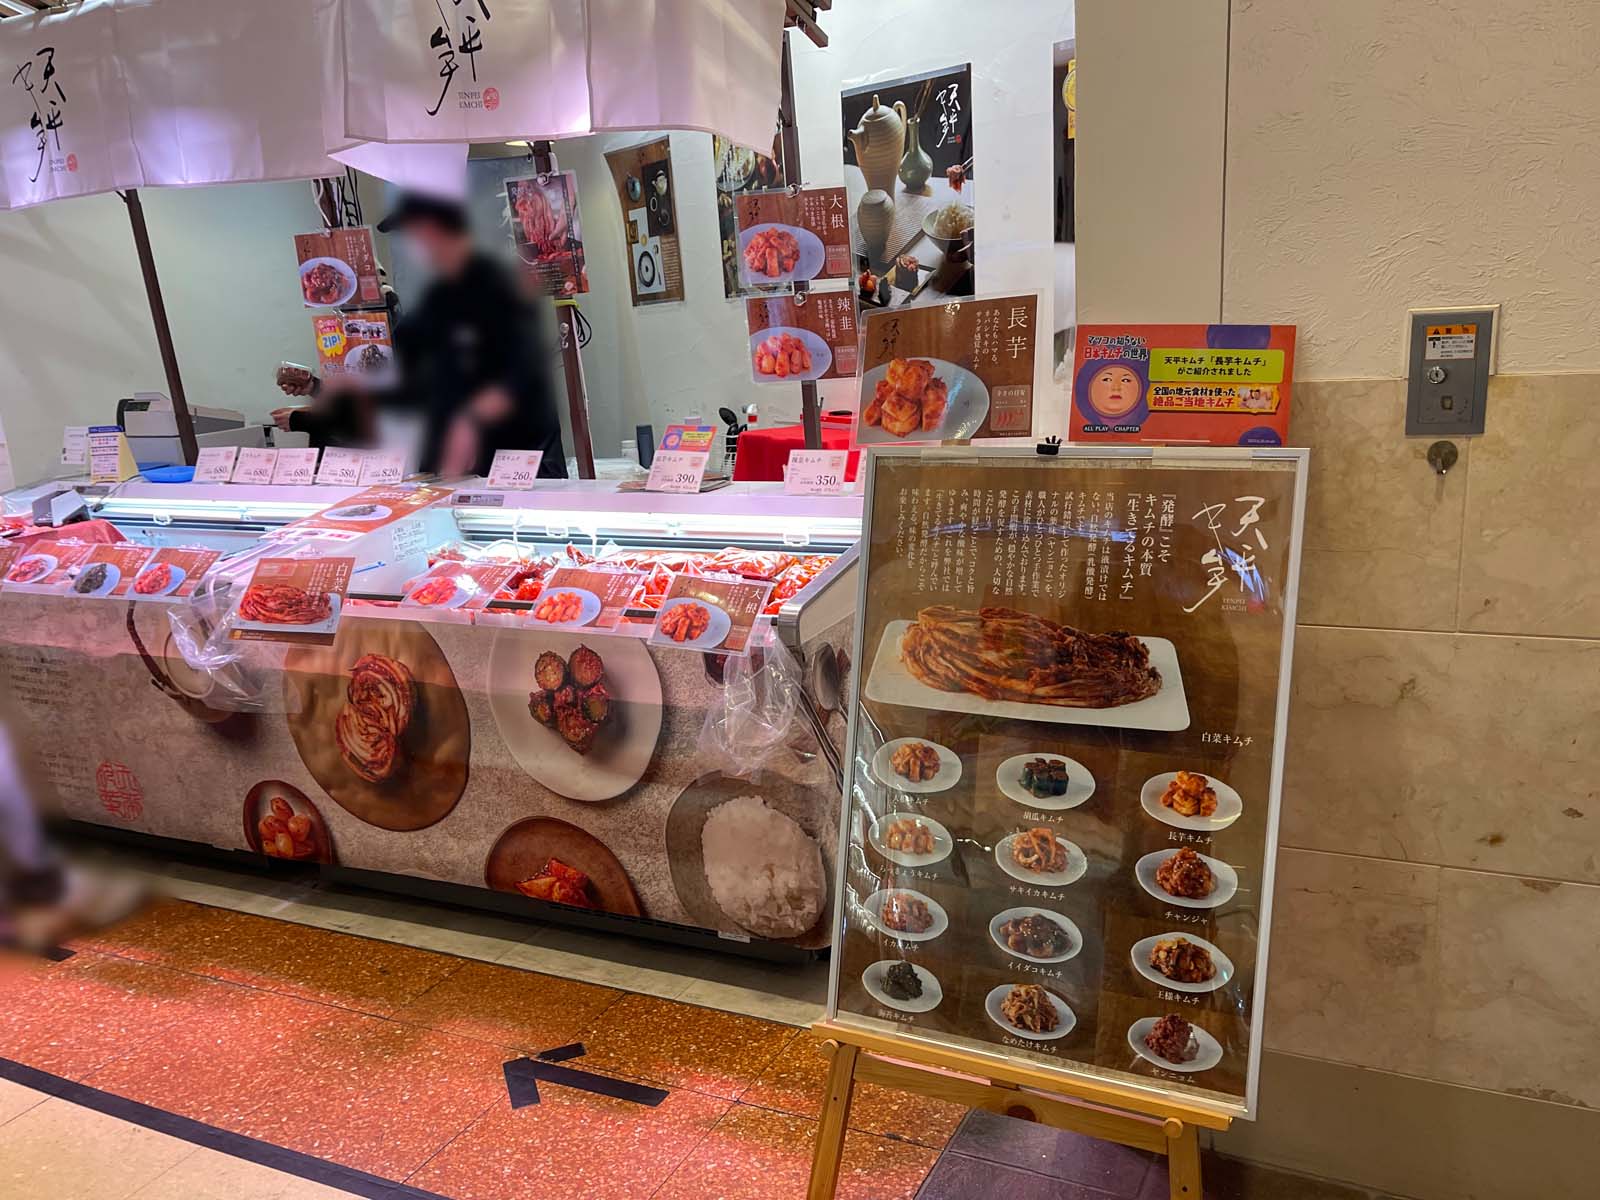 キムチ専門店「天平キムチ」の長芋キムチ、海苔キムチを食べたよ！